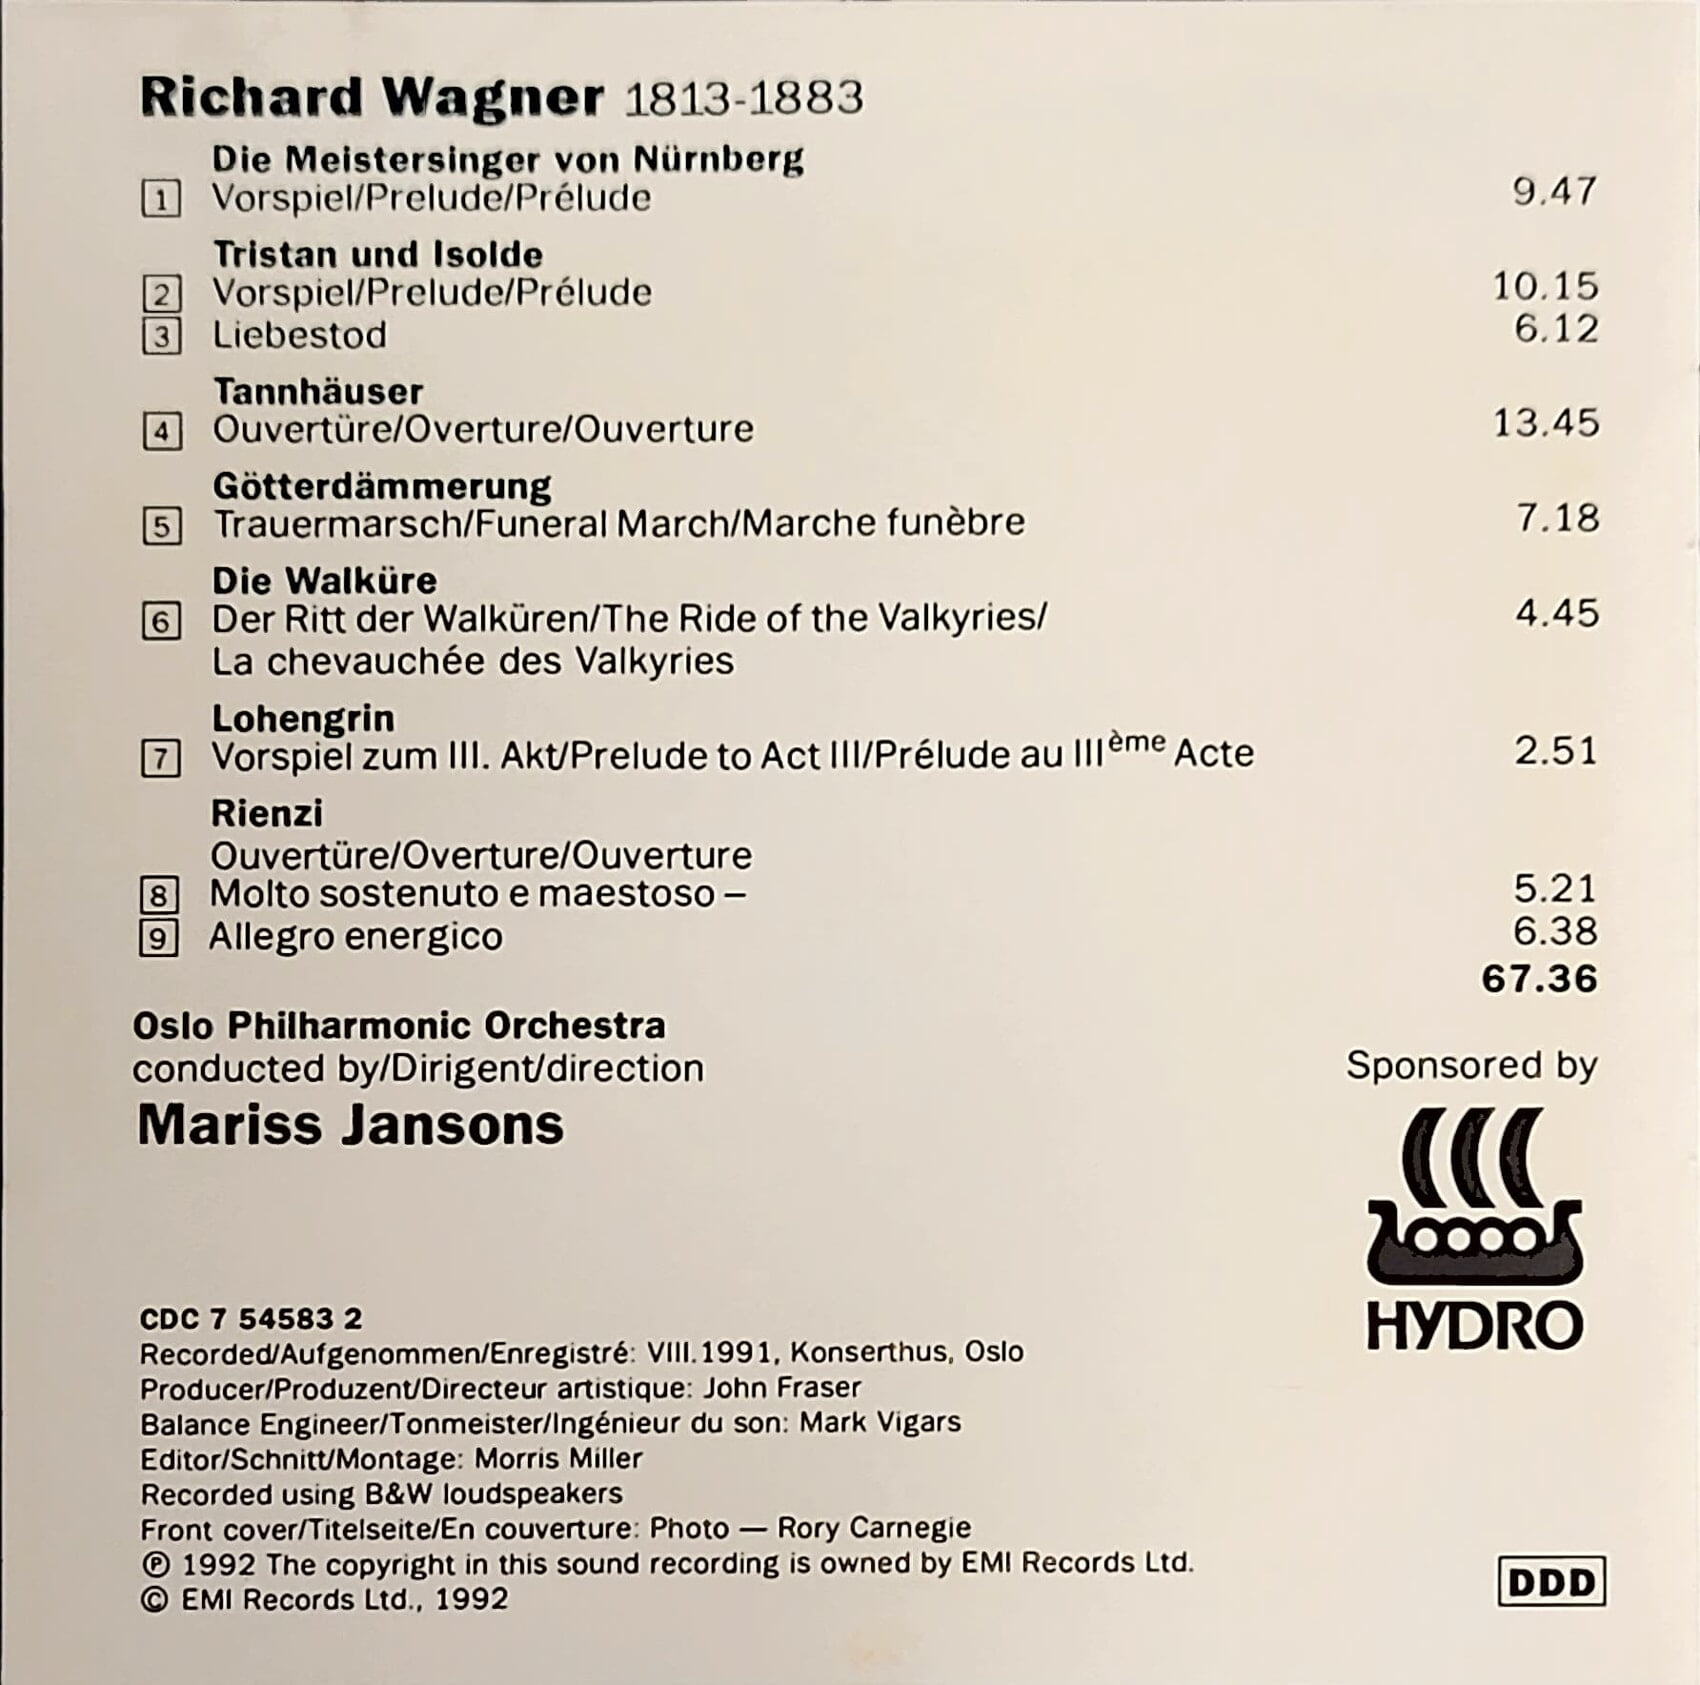 [1992년 발매] 바그너 서곡 & 관현악곡 얀손스 오슬로 필하모닉 Wagner Overtures & Orchestral Music Jansons Oslo Philharmonic